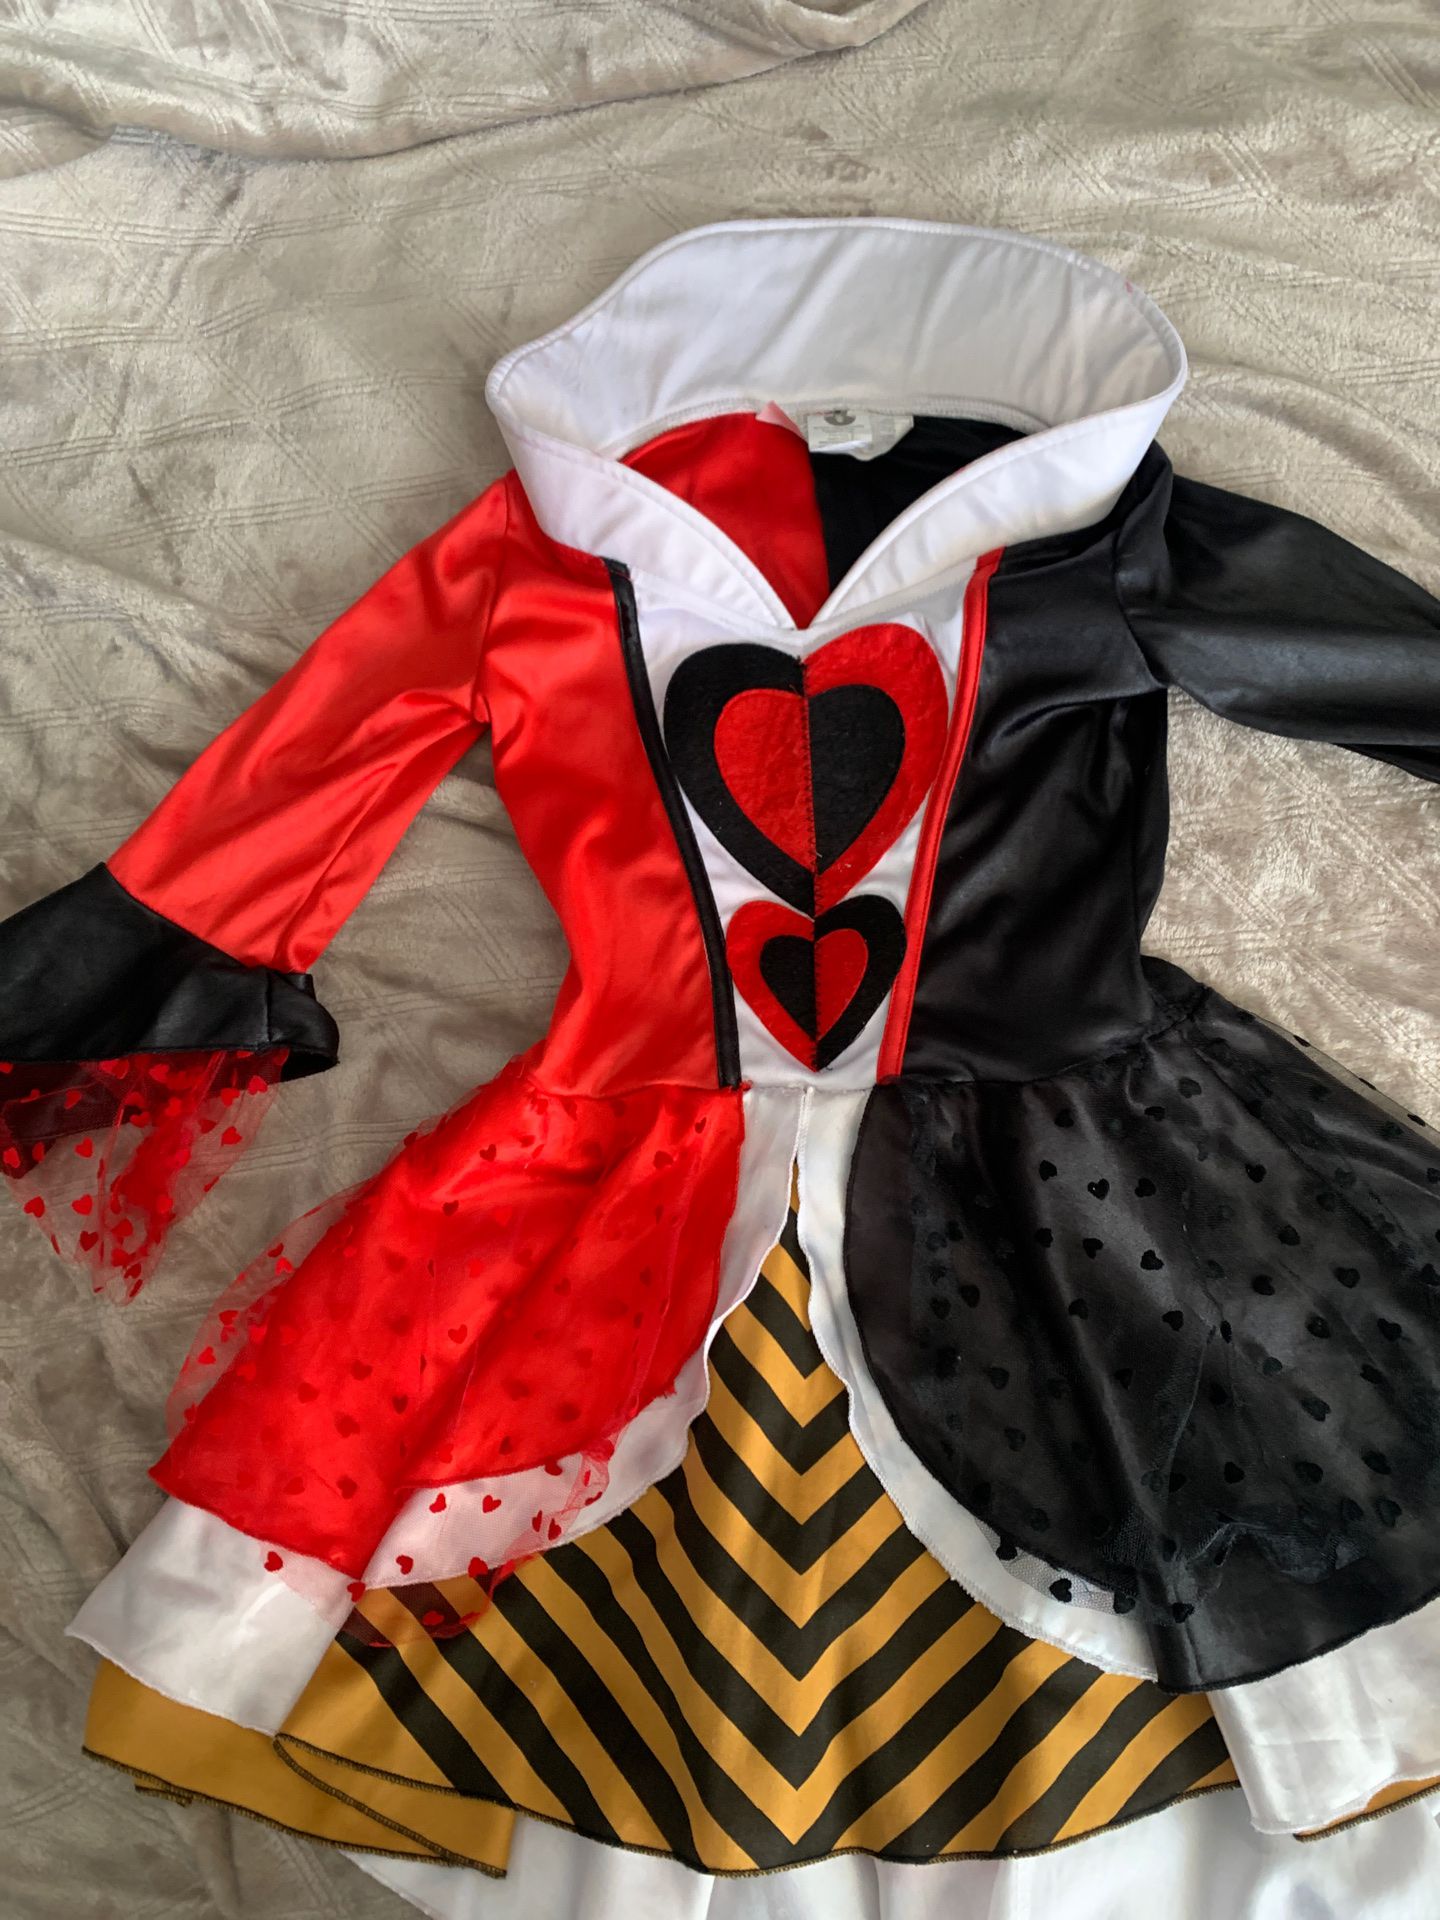 Costume Queen of Hearts